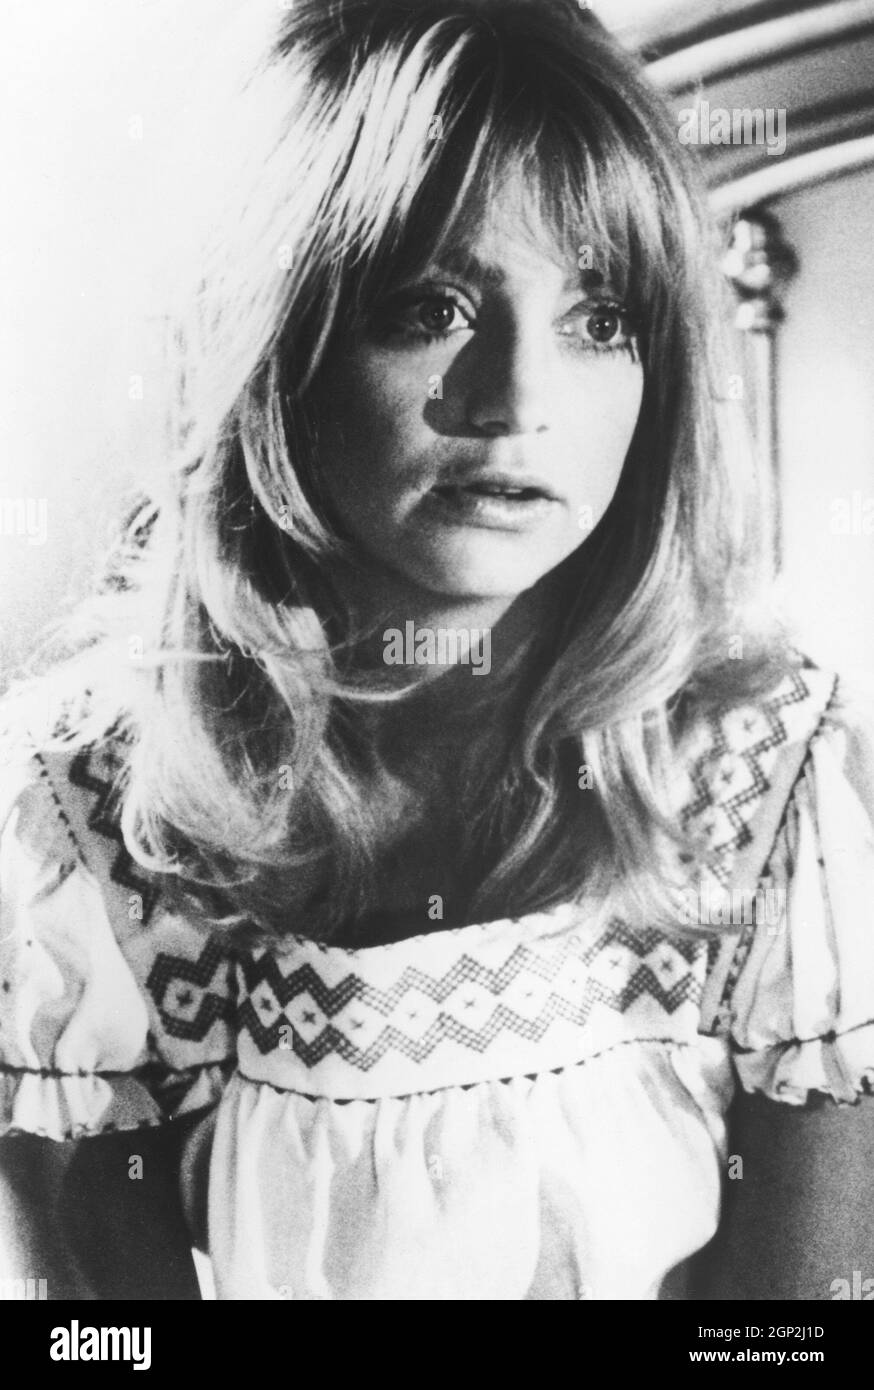 SHAMPOO, Goldie Hawn, 1975 Stock Photo - Alamy